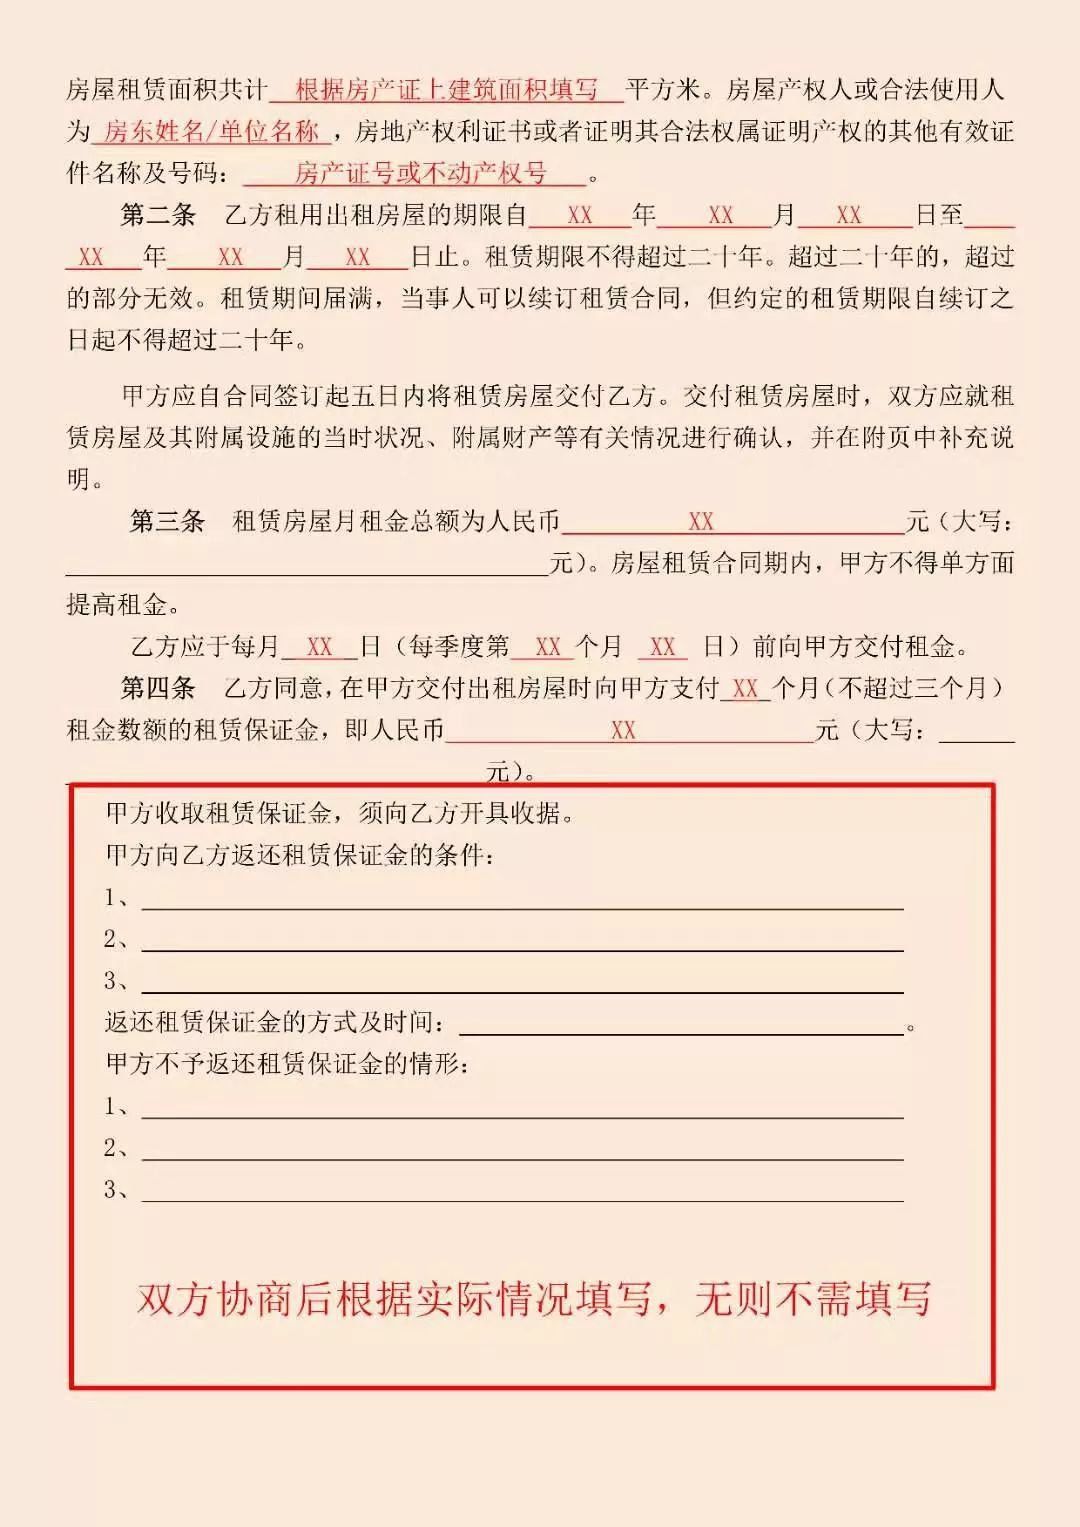 深圳房屋租赁凭证红本办理指南(材料 流程 费用 时限)